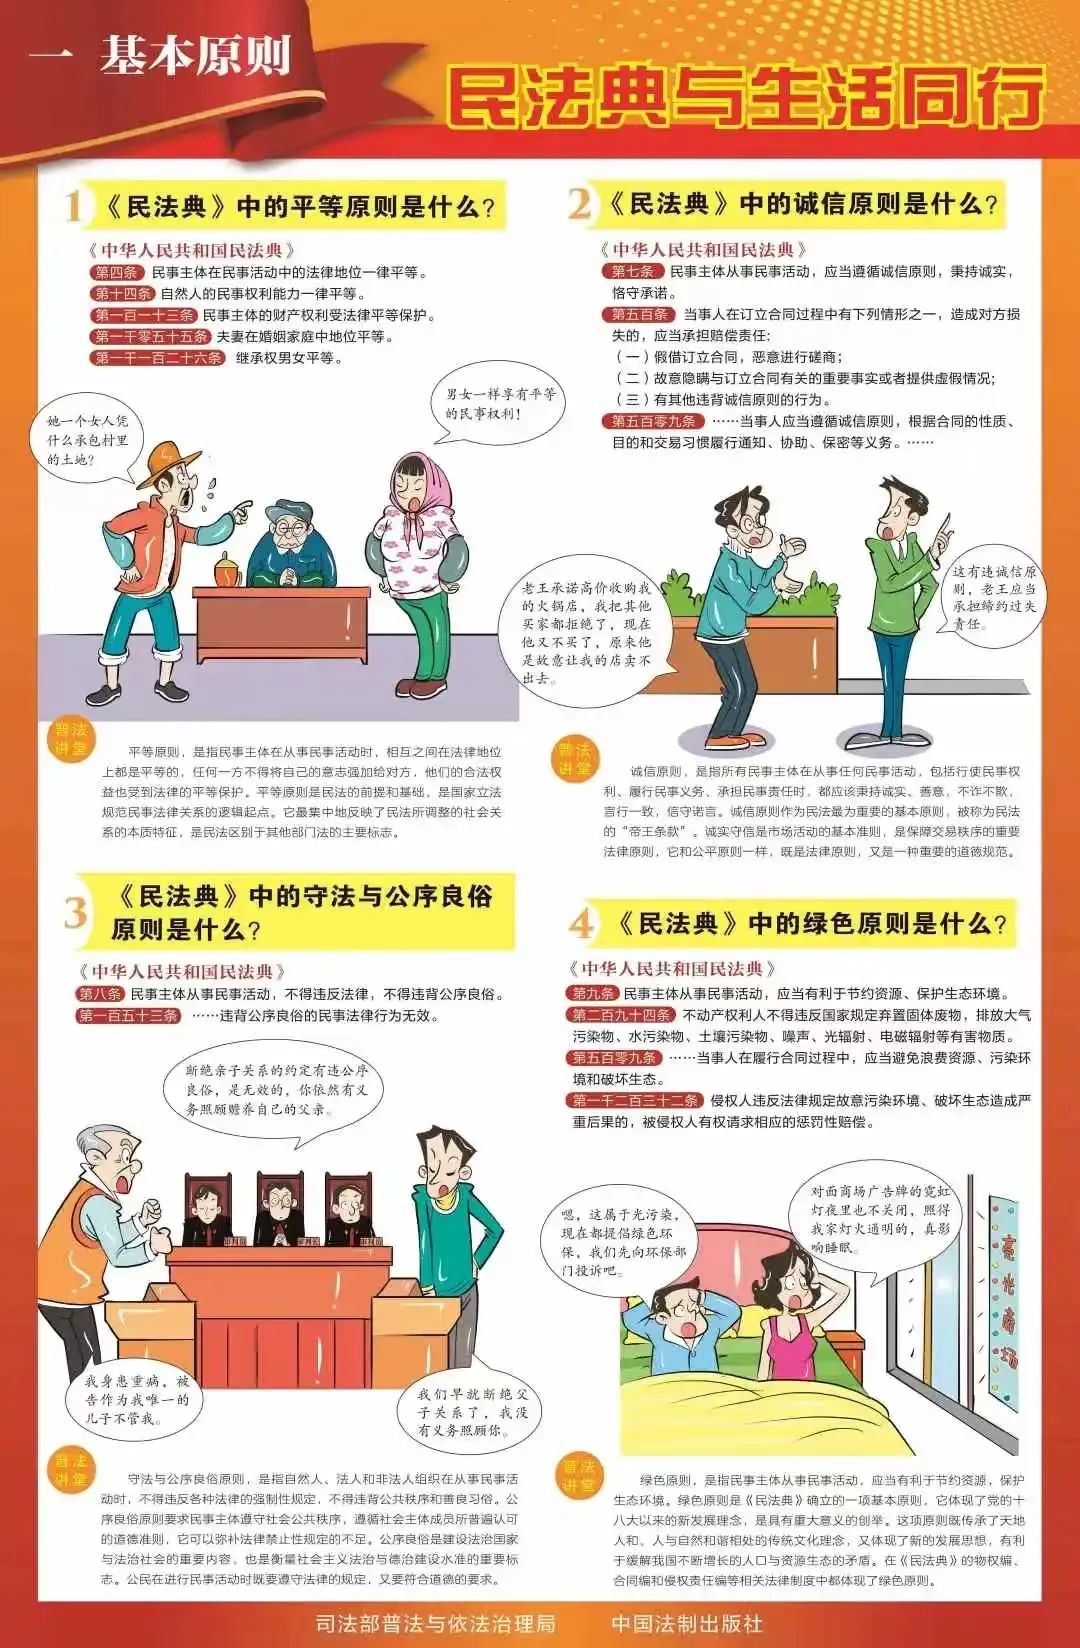 民法典学习宣传丨九张挂图带您速览民法典(图2)